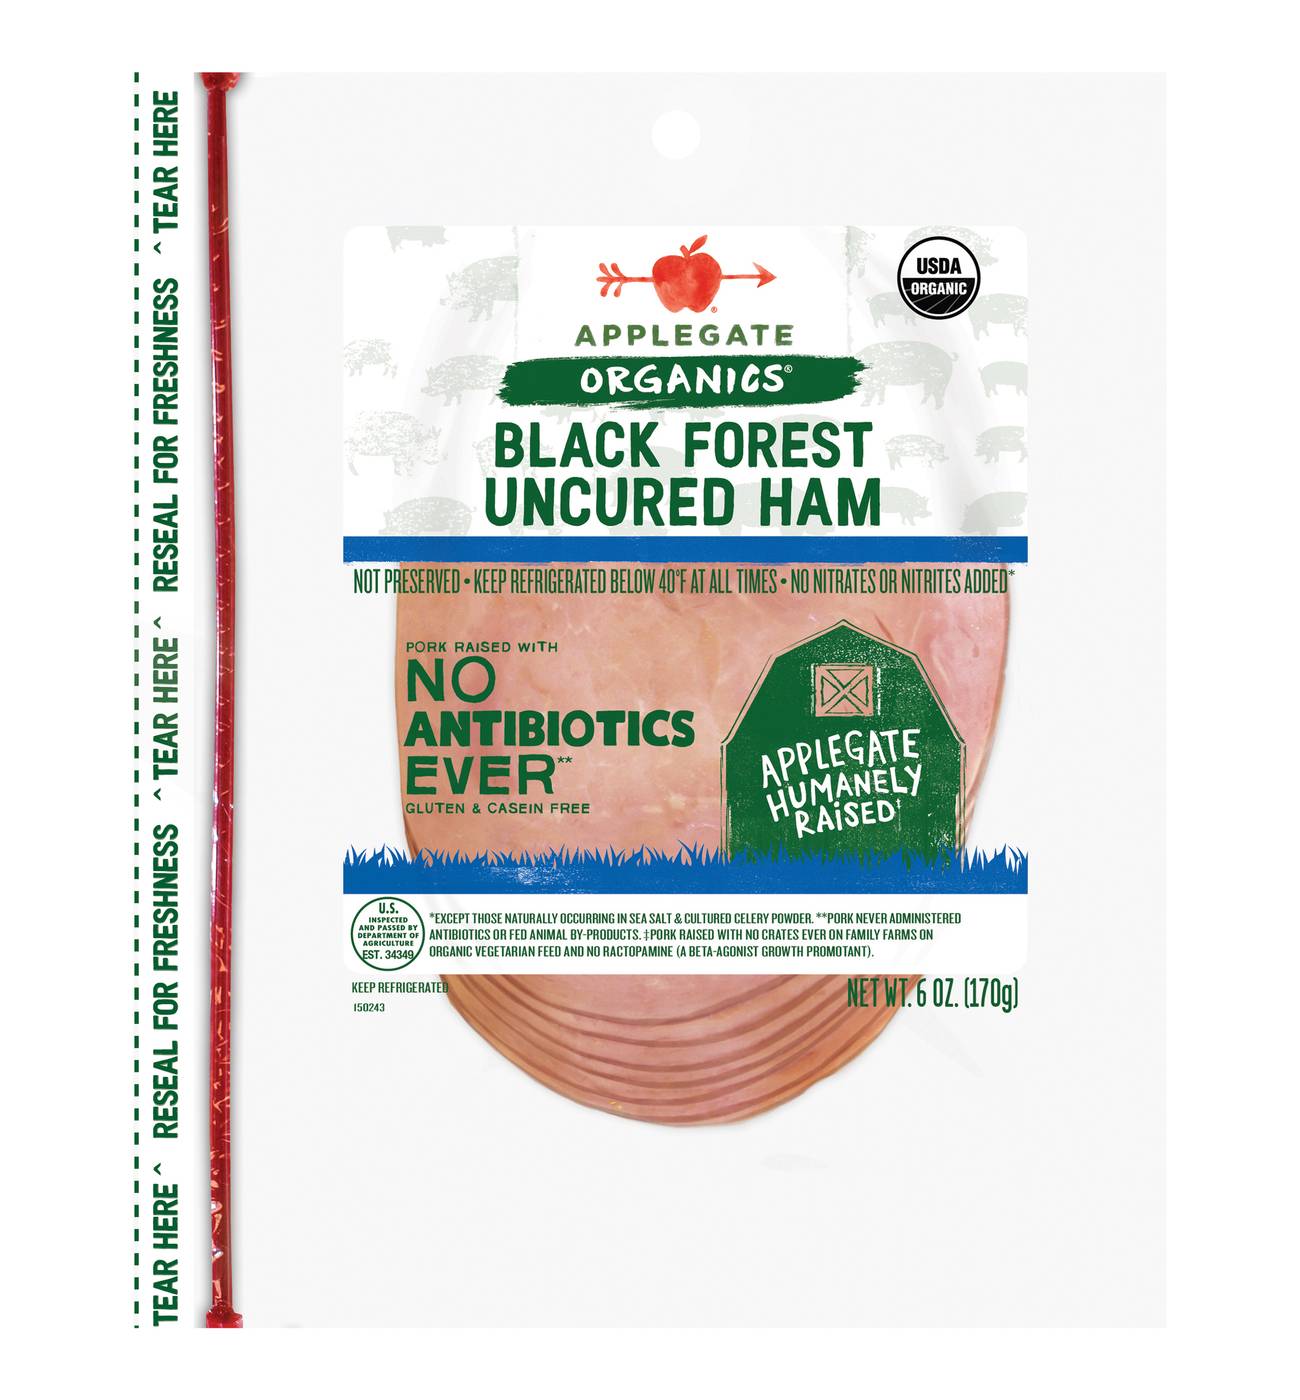 Applegate Organics Uncured Black Forest Ham Sliced; image 1 of 2